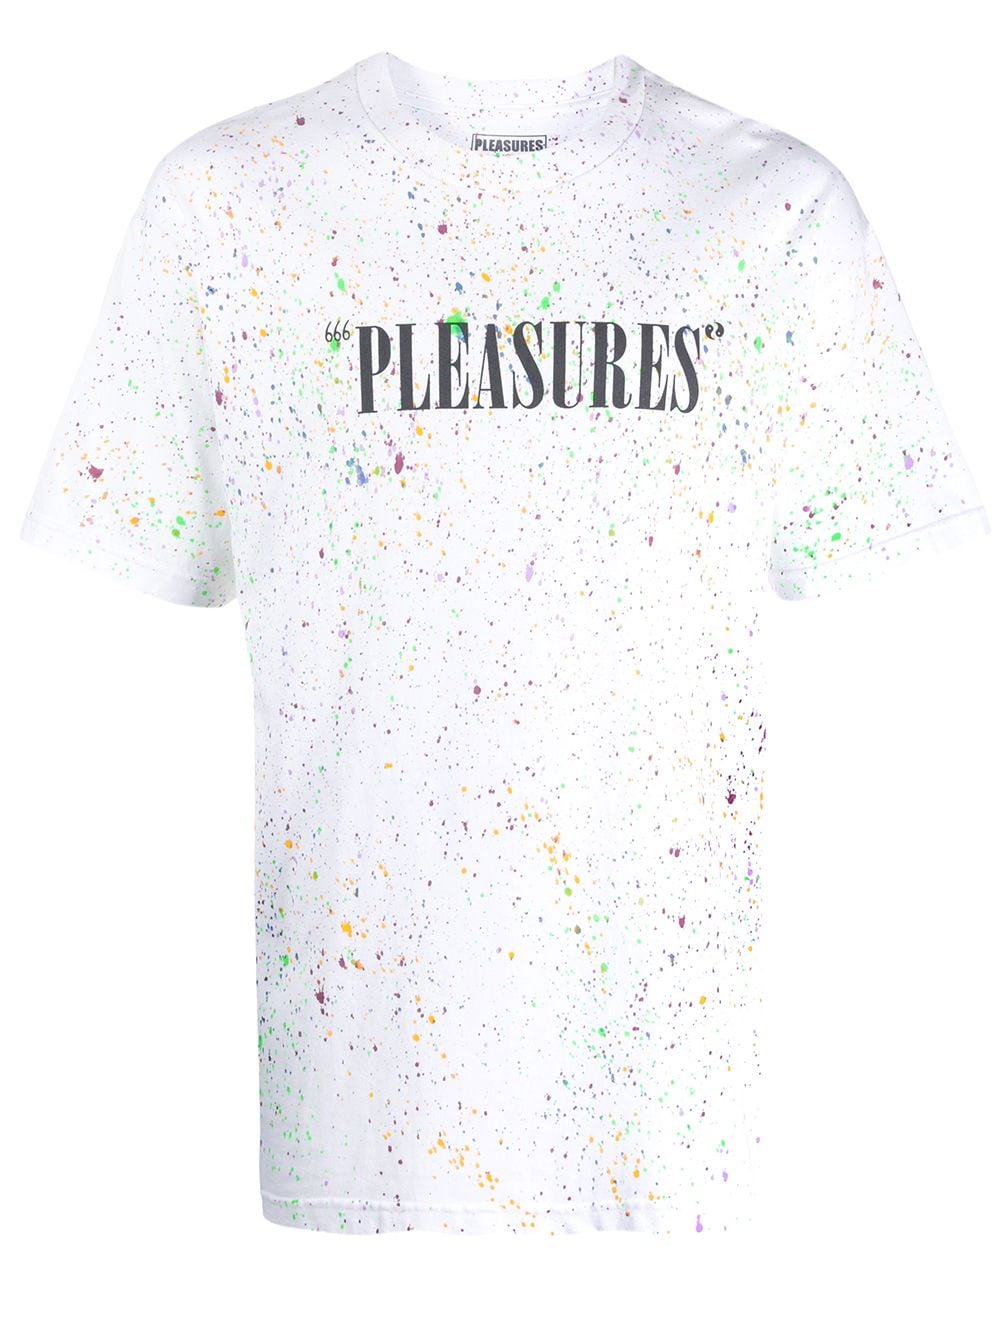 фото Pleasures футболка с эффектом разбрызганной краски